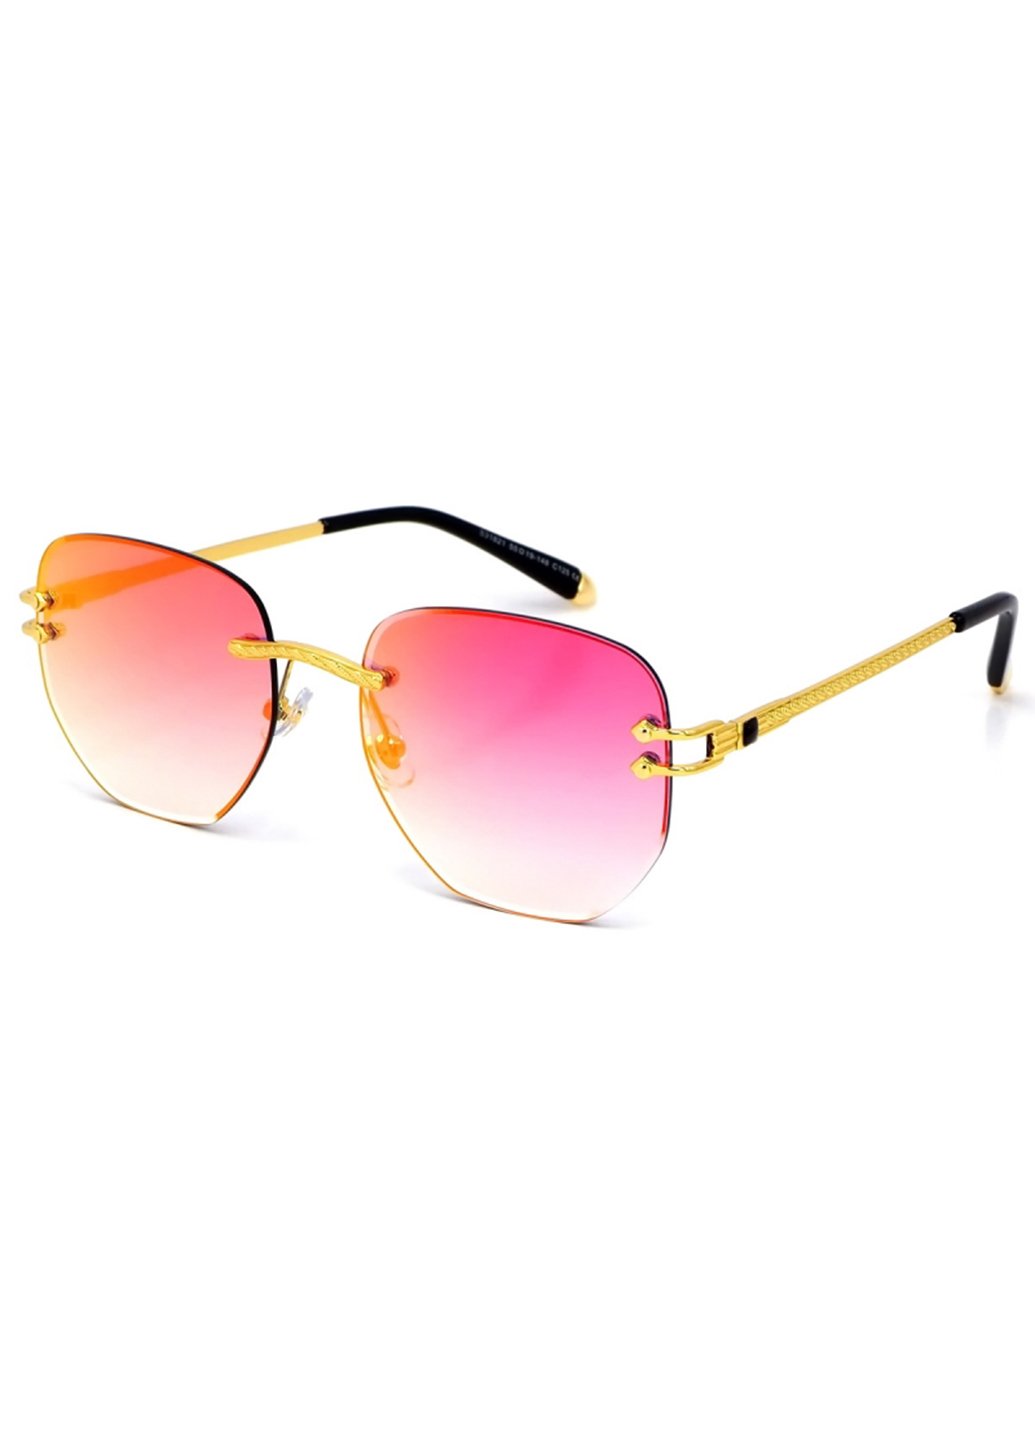 Купить Женские солнцезащитные очки Merlini с поляризацией S31821 117064 - Золотистый в интернет-магазине